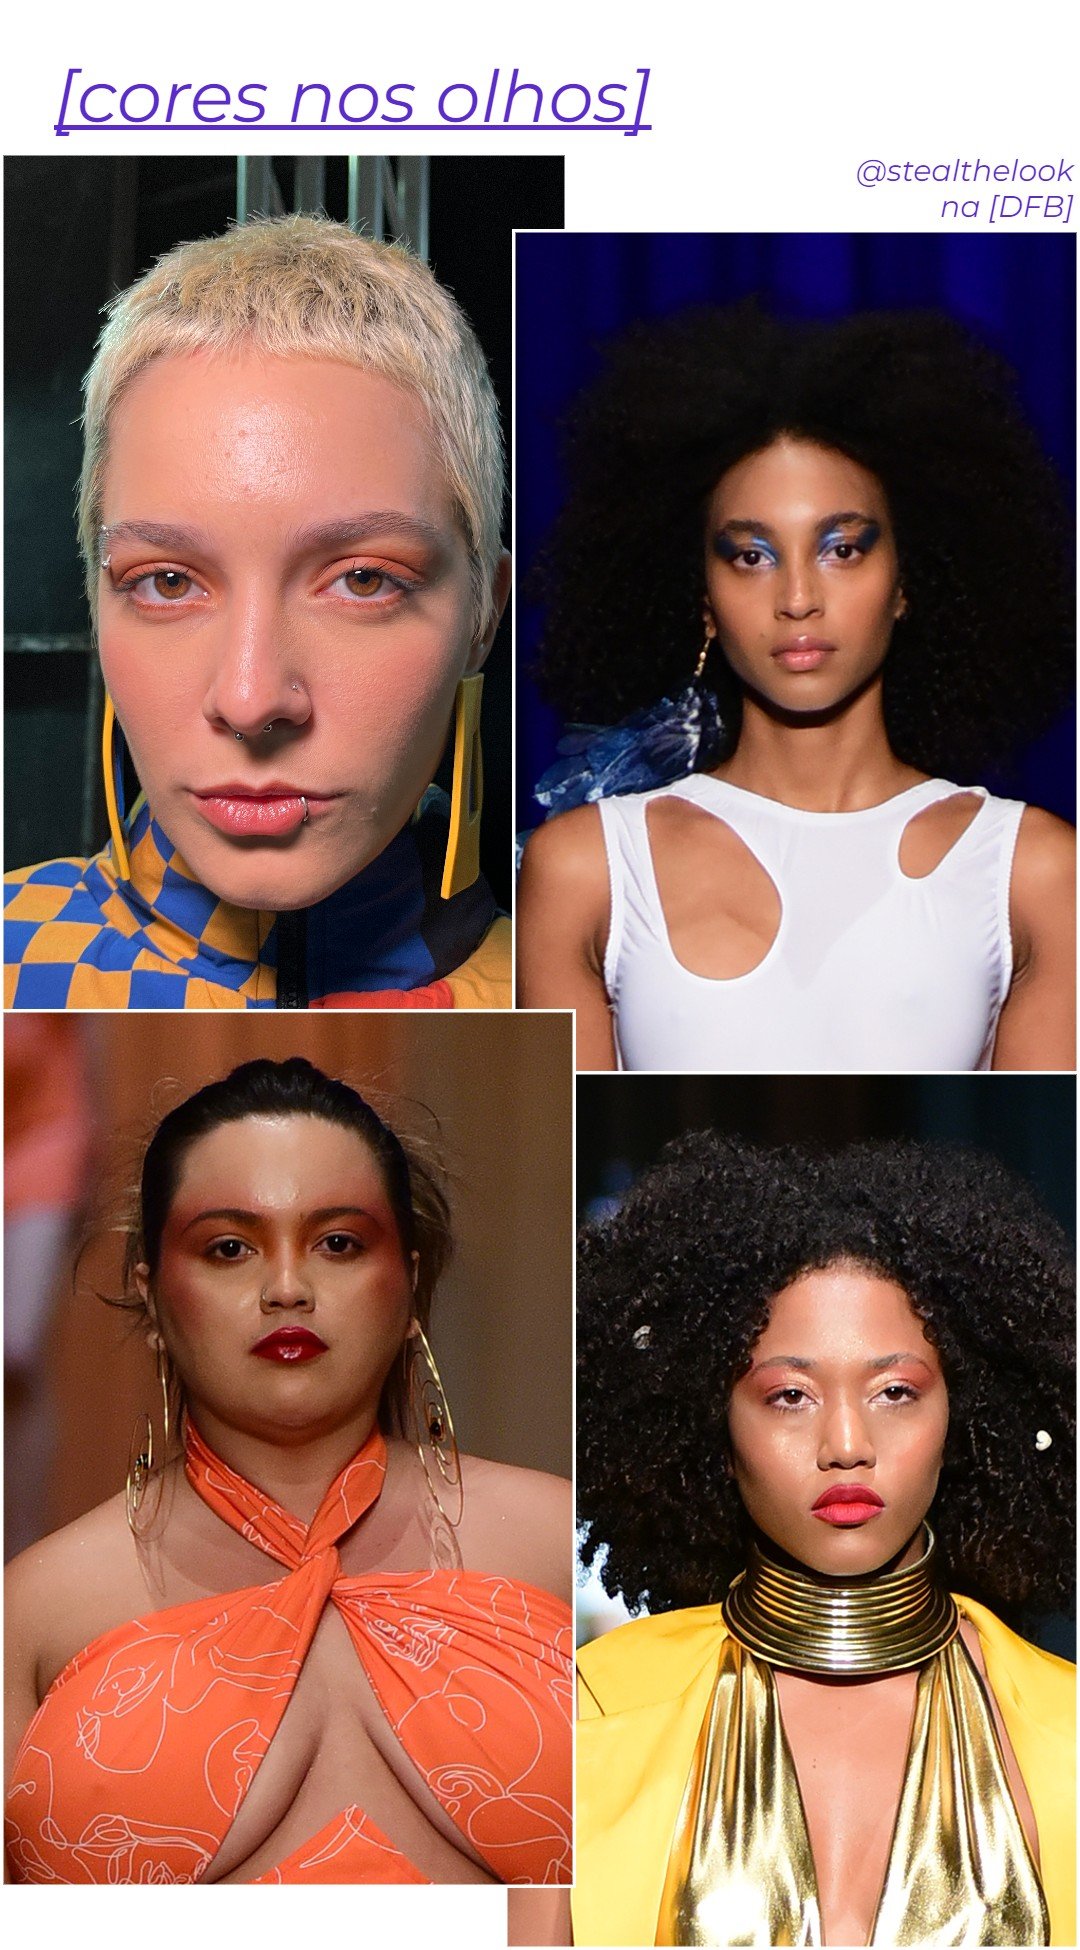 Baba, Norm Brand, Liana D'Afrika, Ahazando - dfb - tendências de moda e beleza - outono - brasil - https://stealthelook.com.br